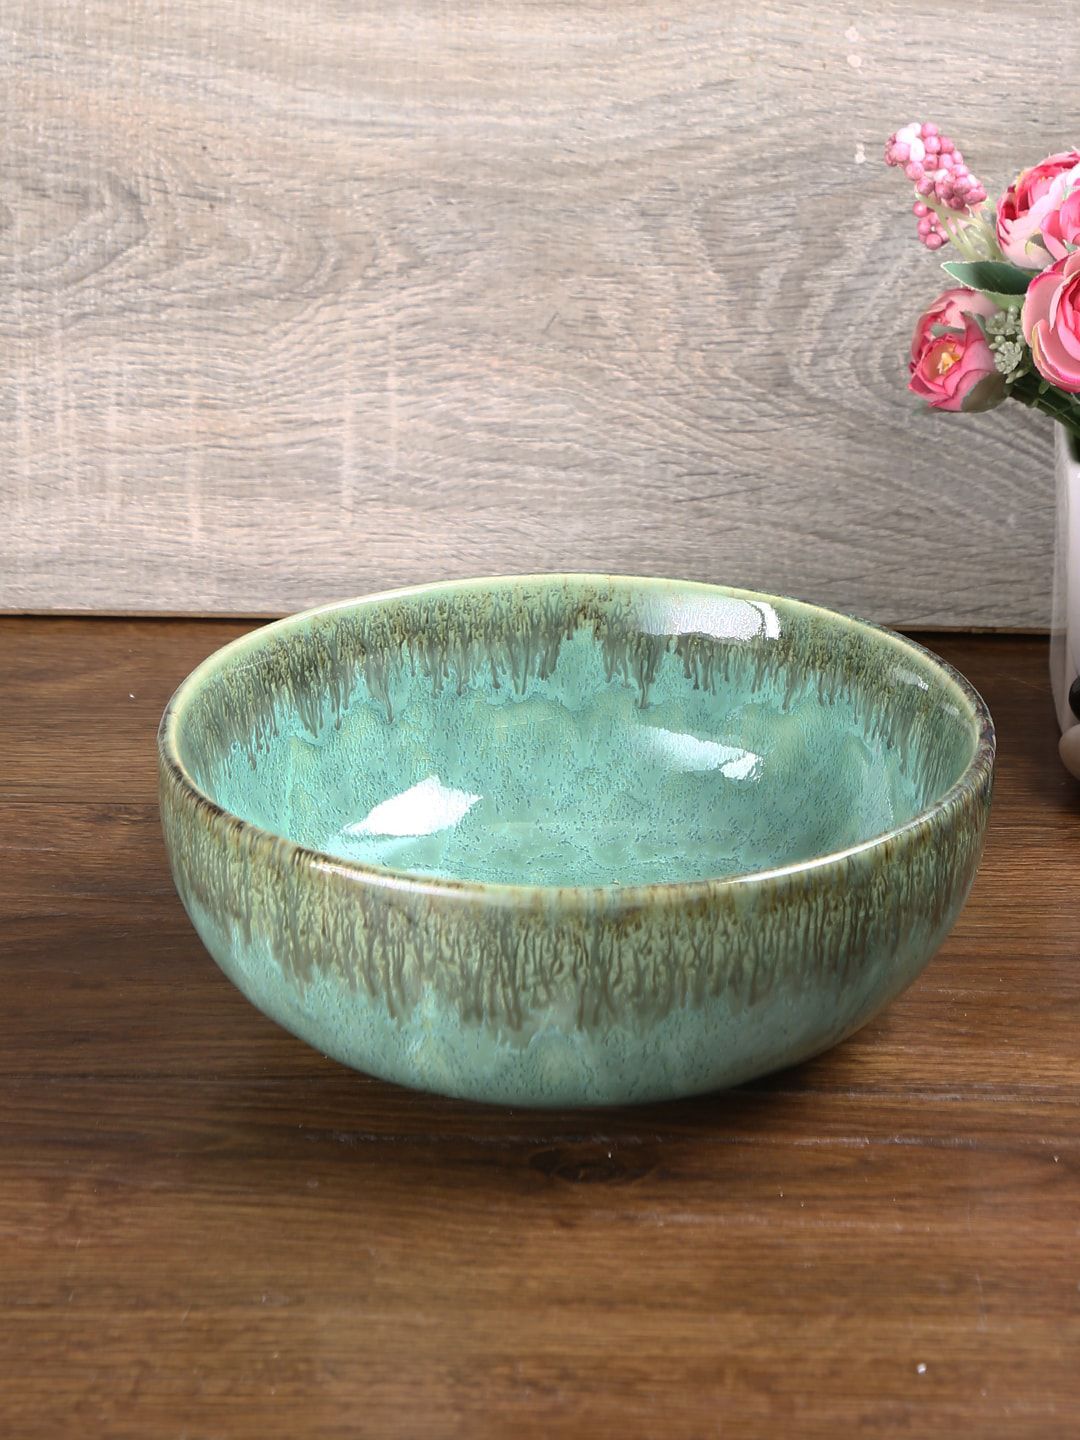 Aapno Rajasthan Sea Green & Brown Ceramic Bowl Price in India